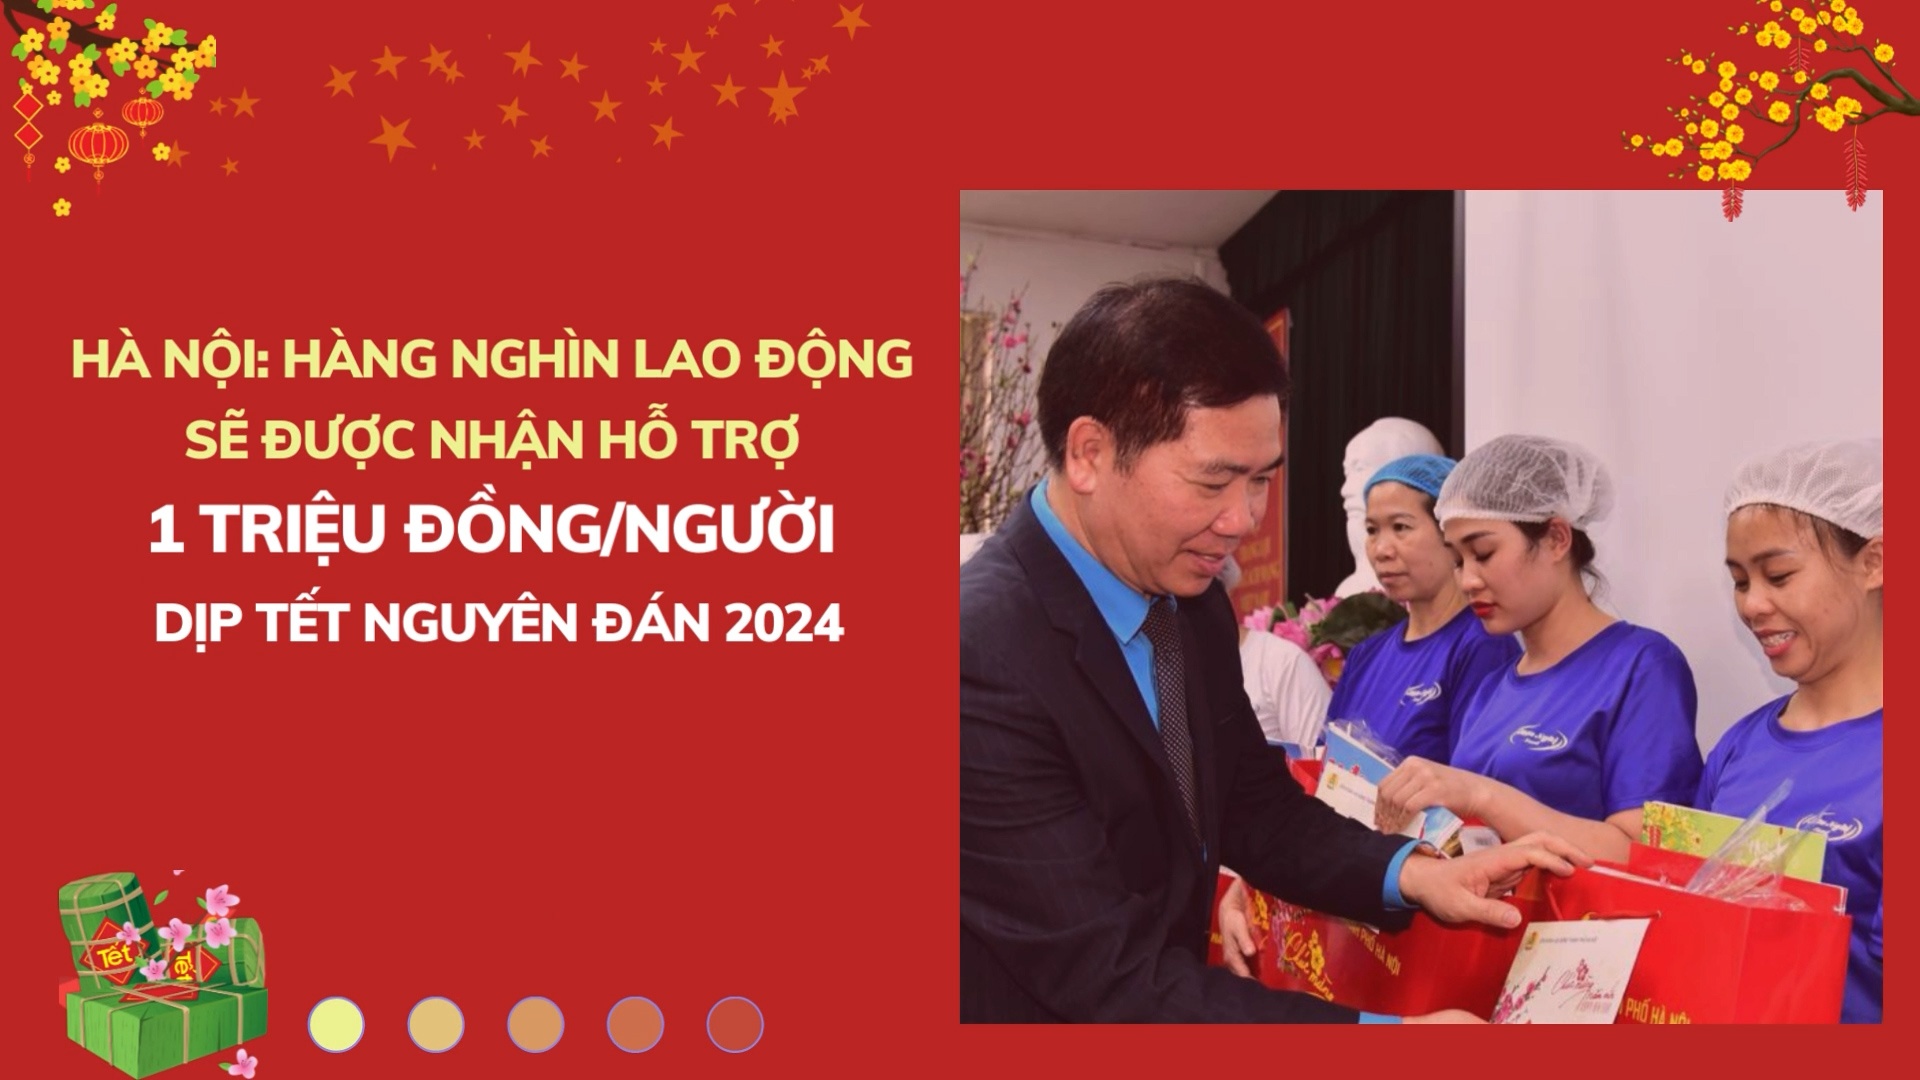 Hà Nội: Hàng nghìn lao động sẽ được nhận hỗ trợ 1 triệu đồng/người dịp Tết Nguyên Đán 2024